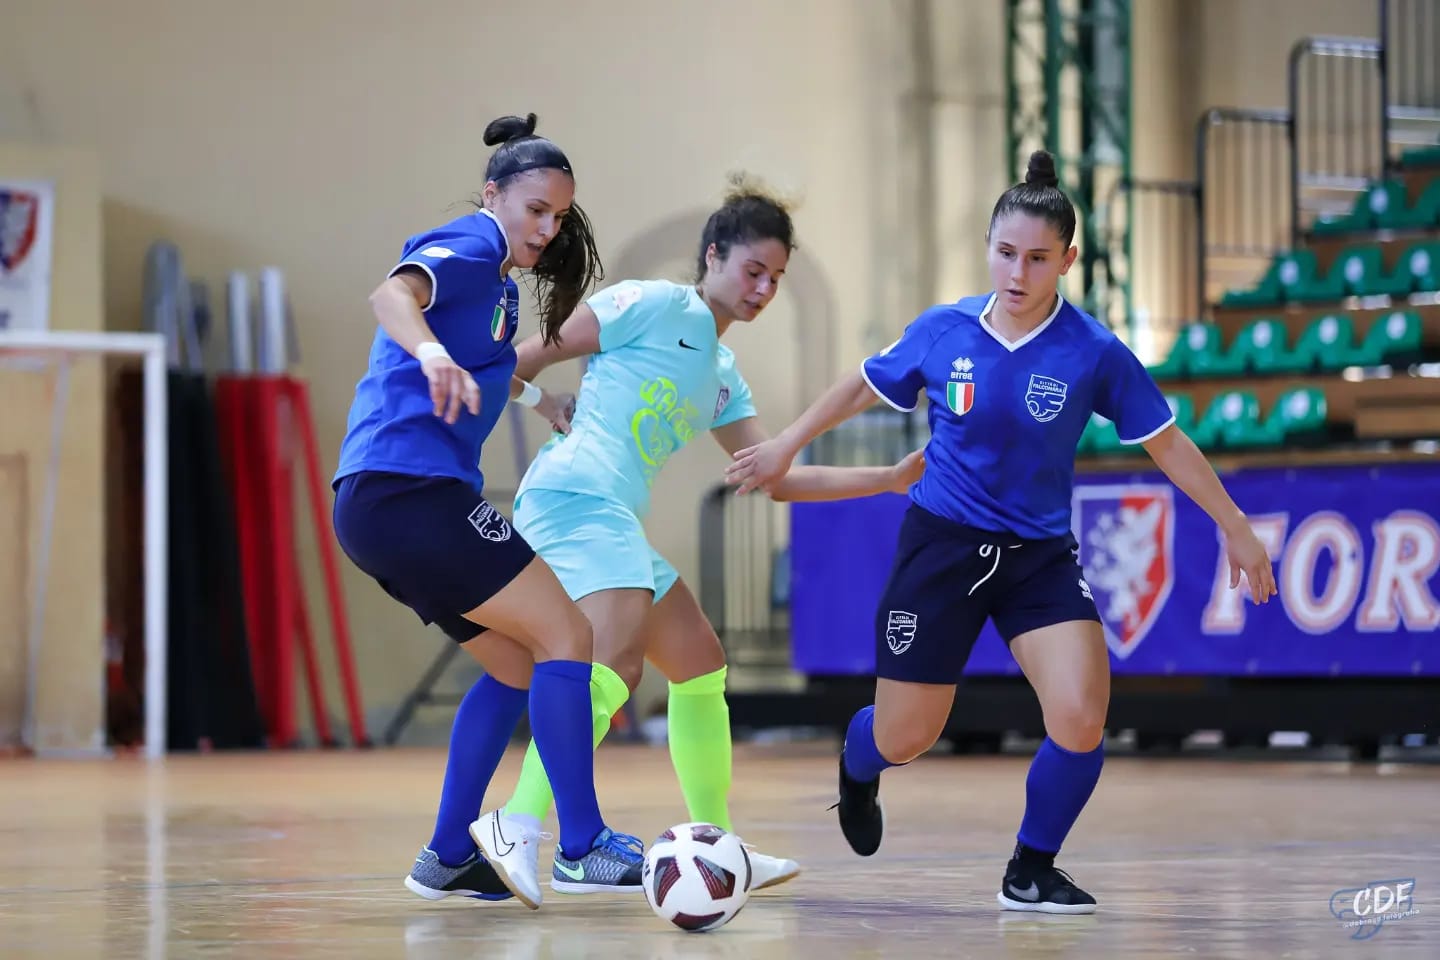 Calcio a 5 femminile: le campionesse di Falconara al debutto